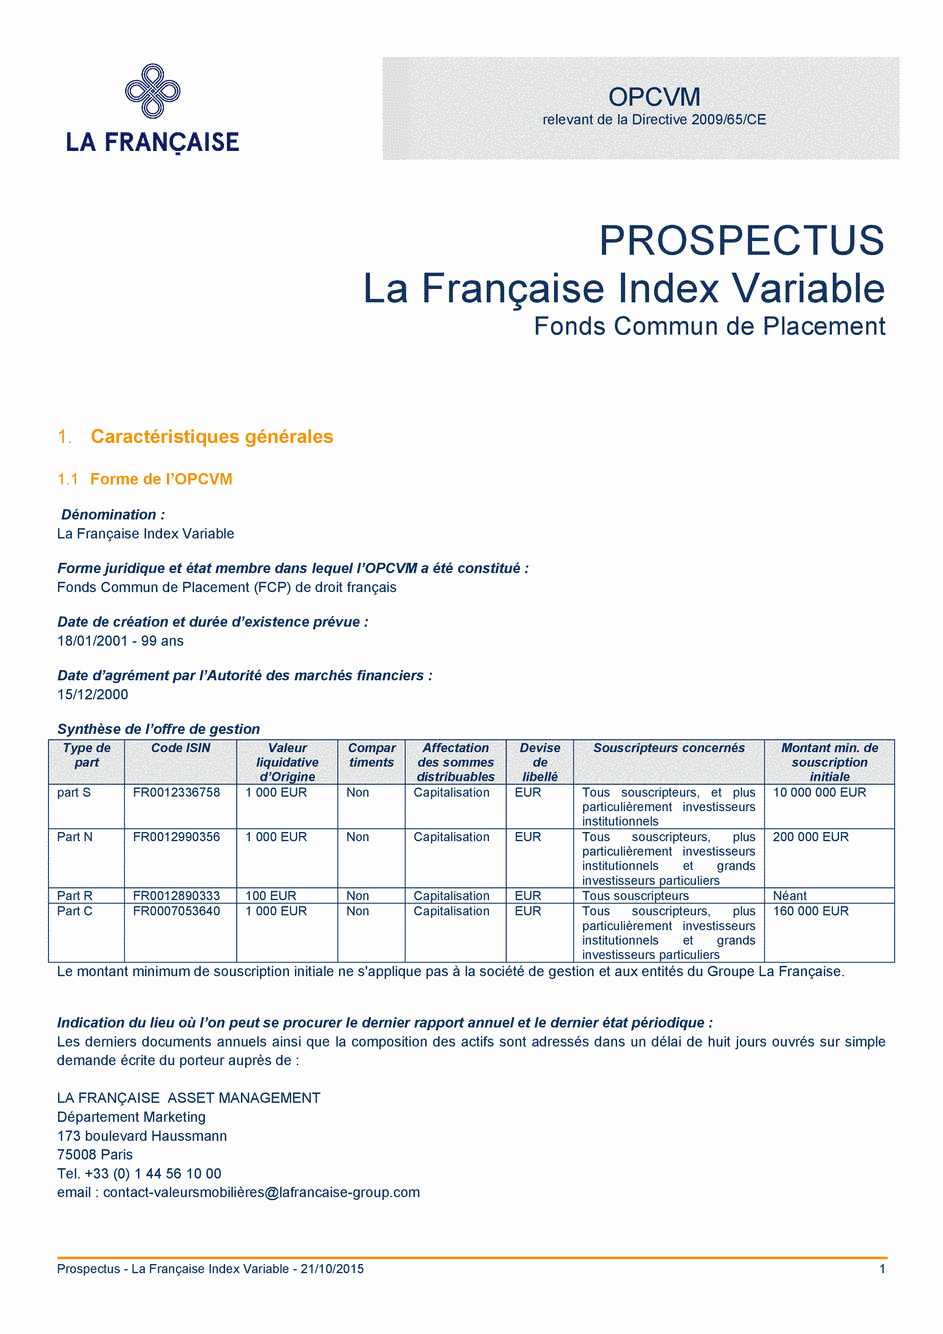 Prospectus La Française Index Variable - Part N - 21/10/2015 - Français